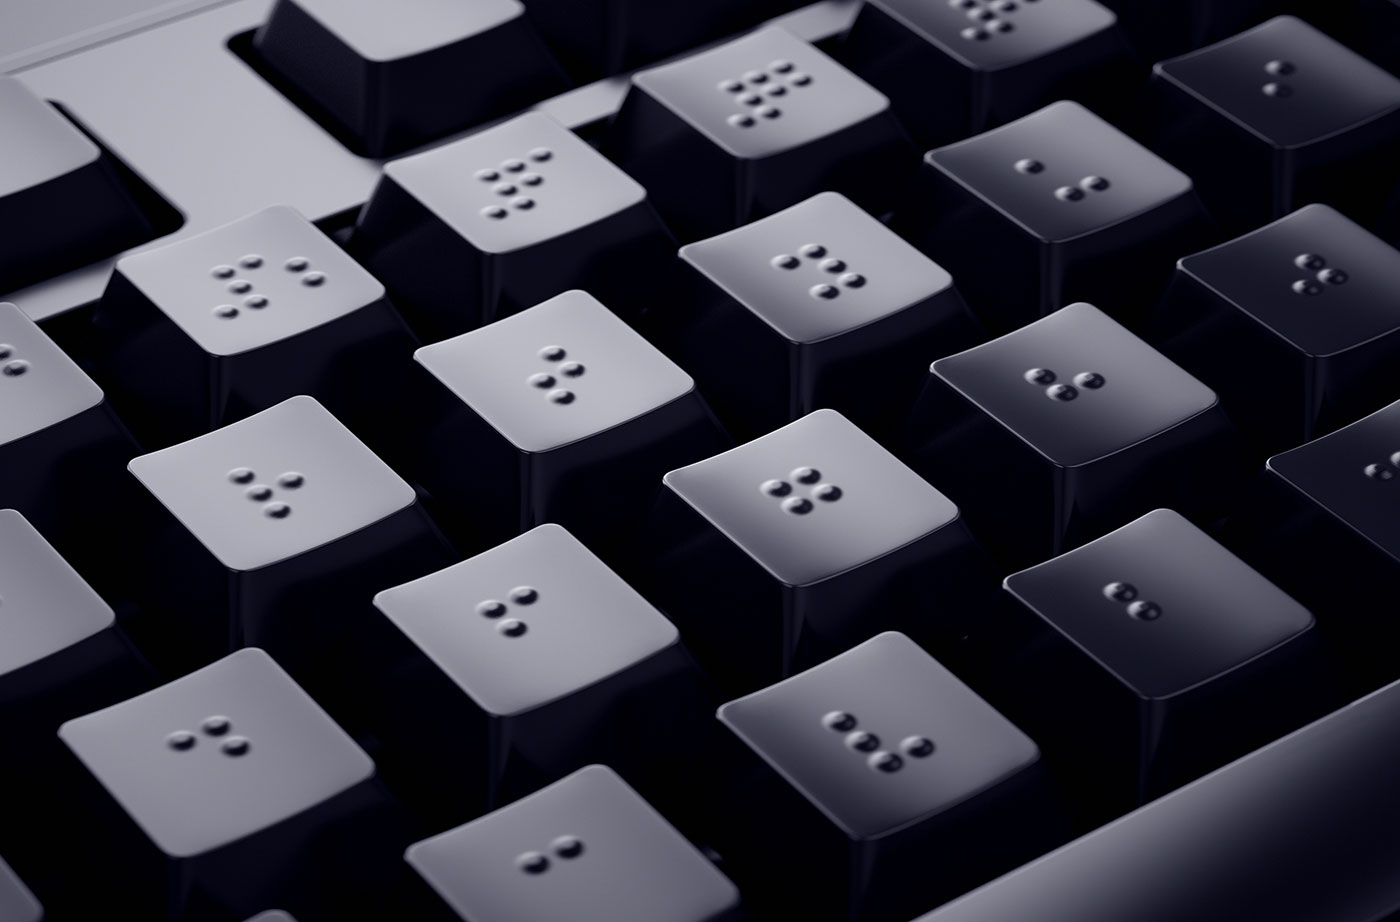 braille keyboard